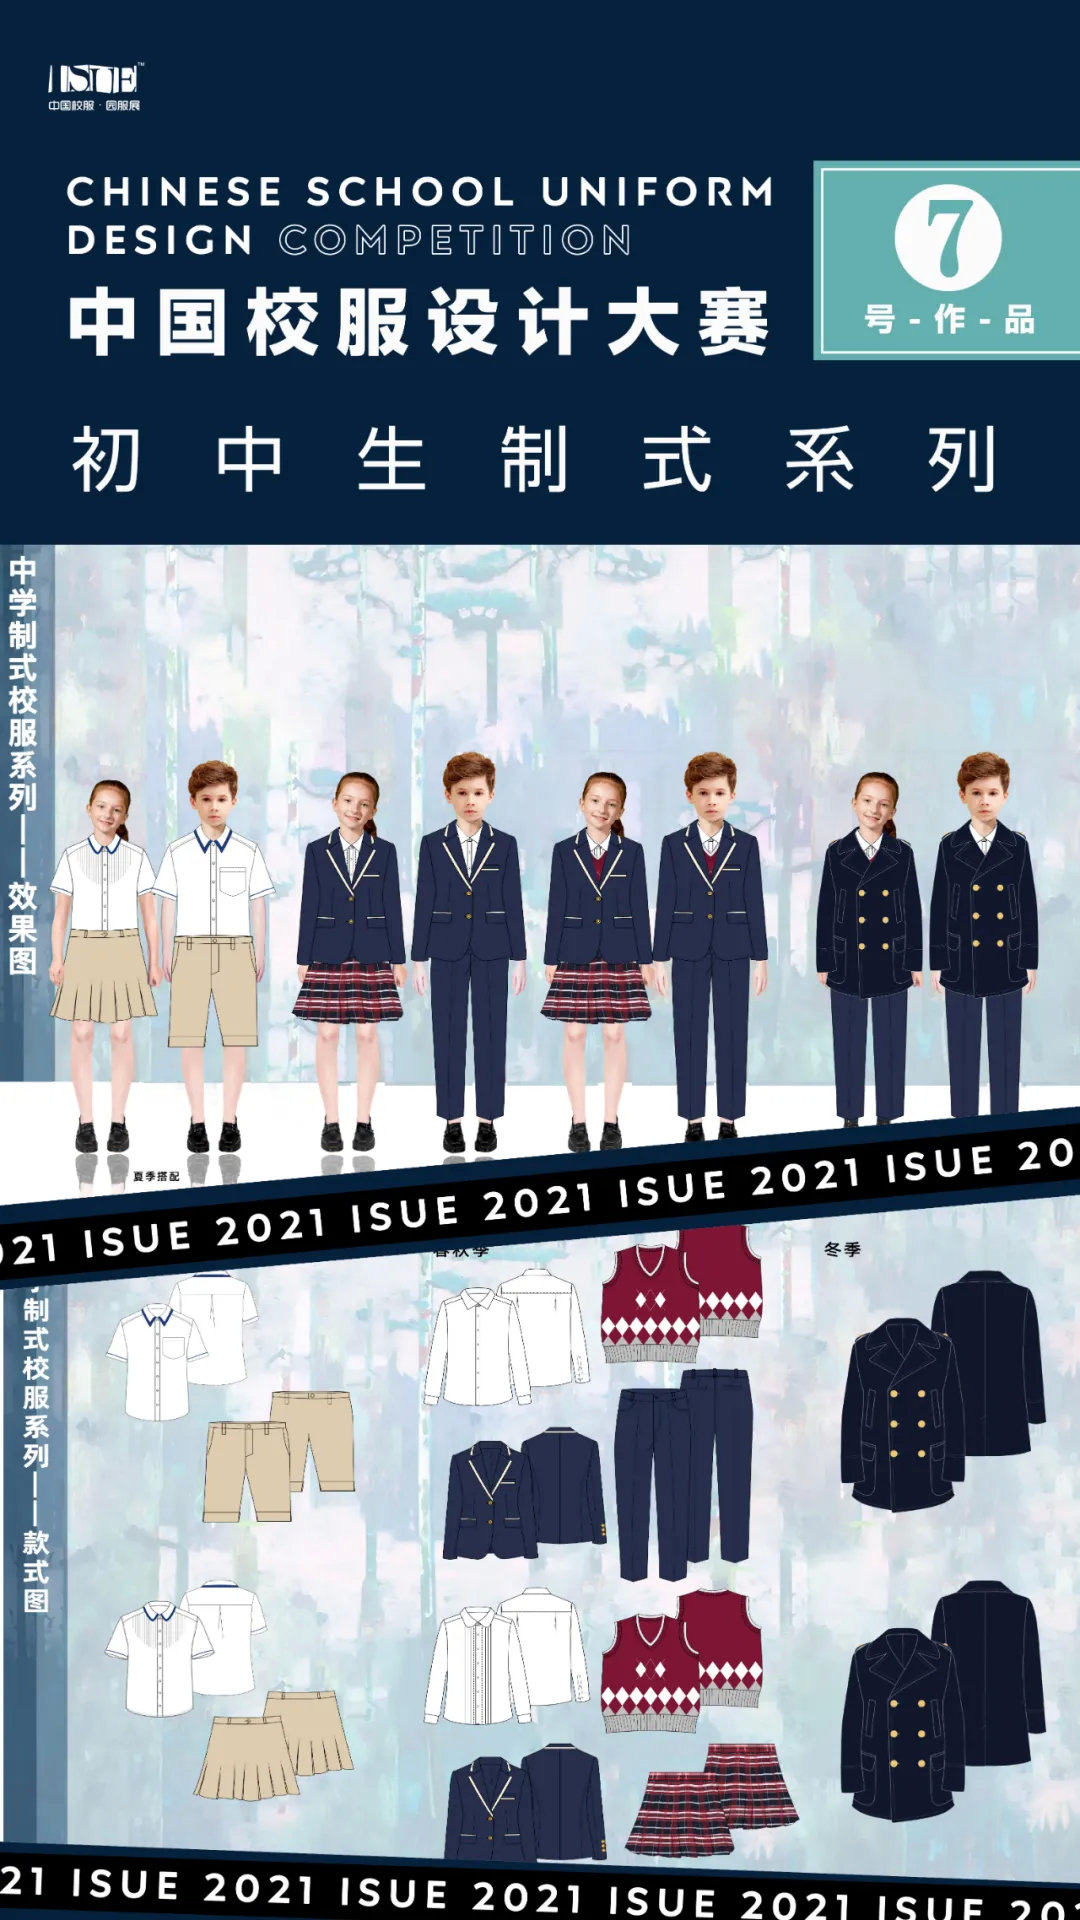 初中生制式系列isue2021中国校服设计大赛网络评选